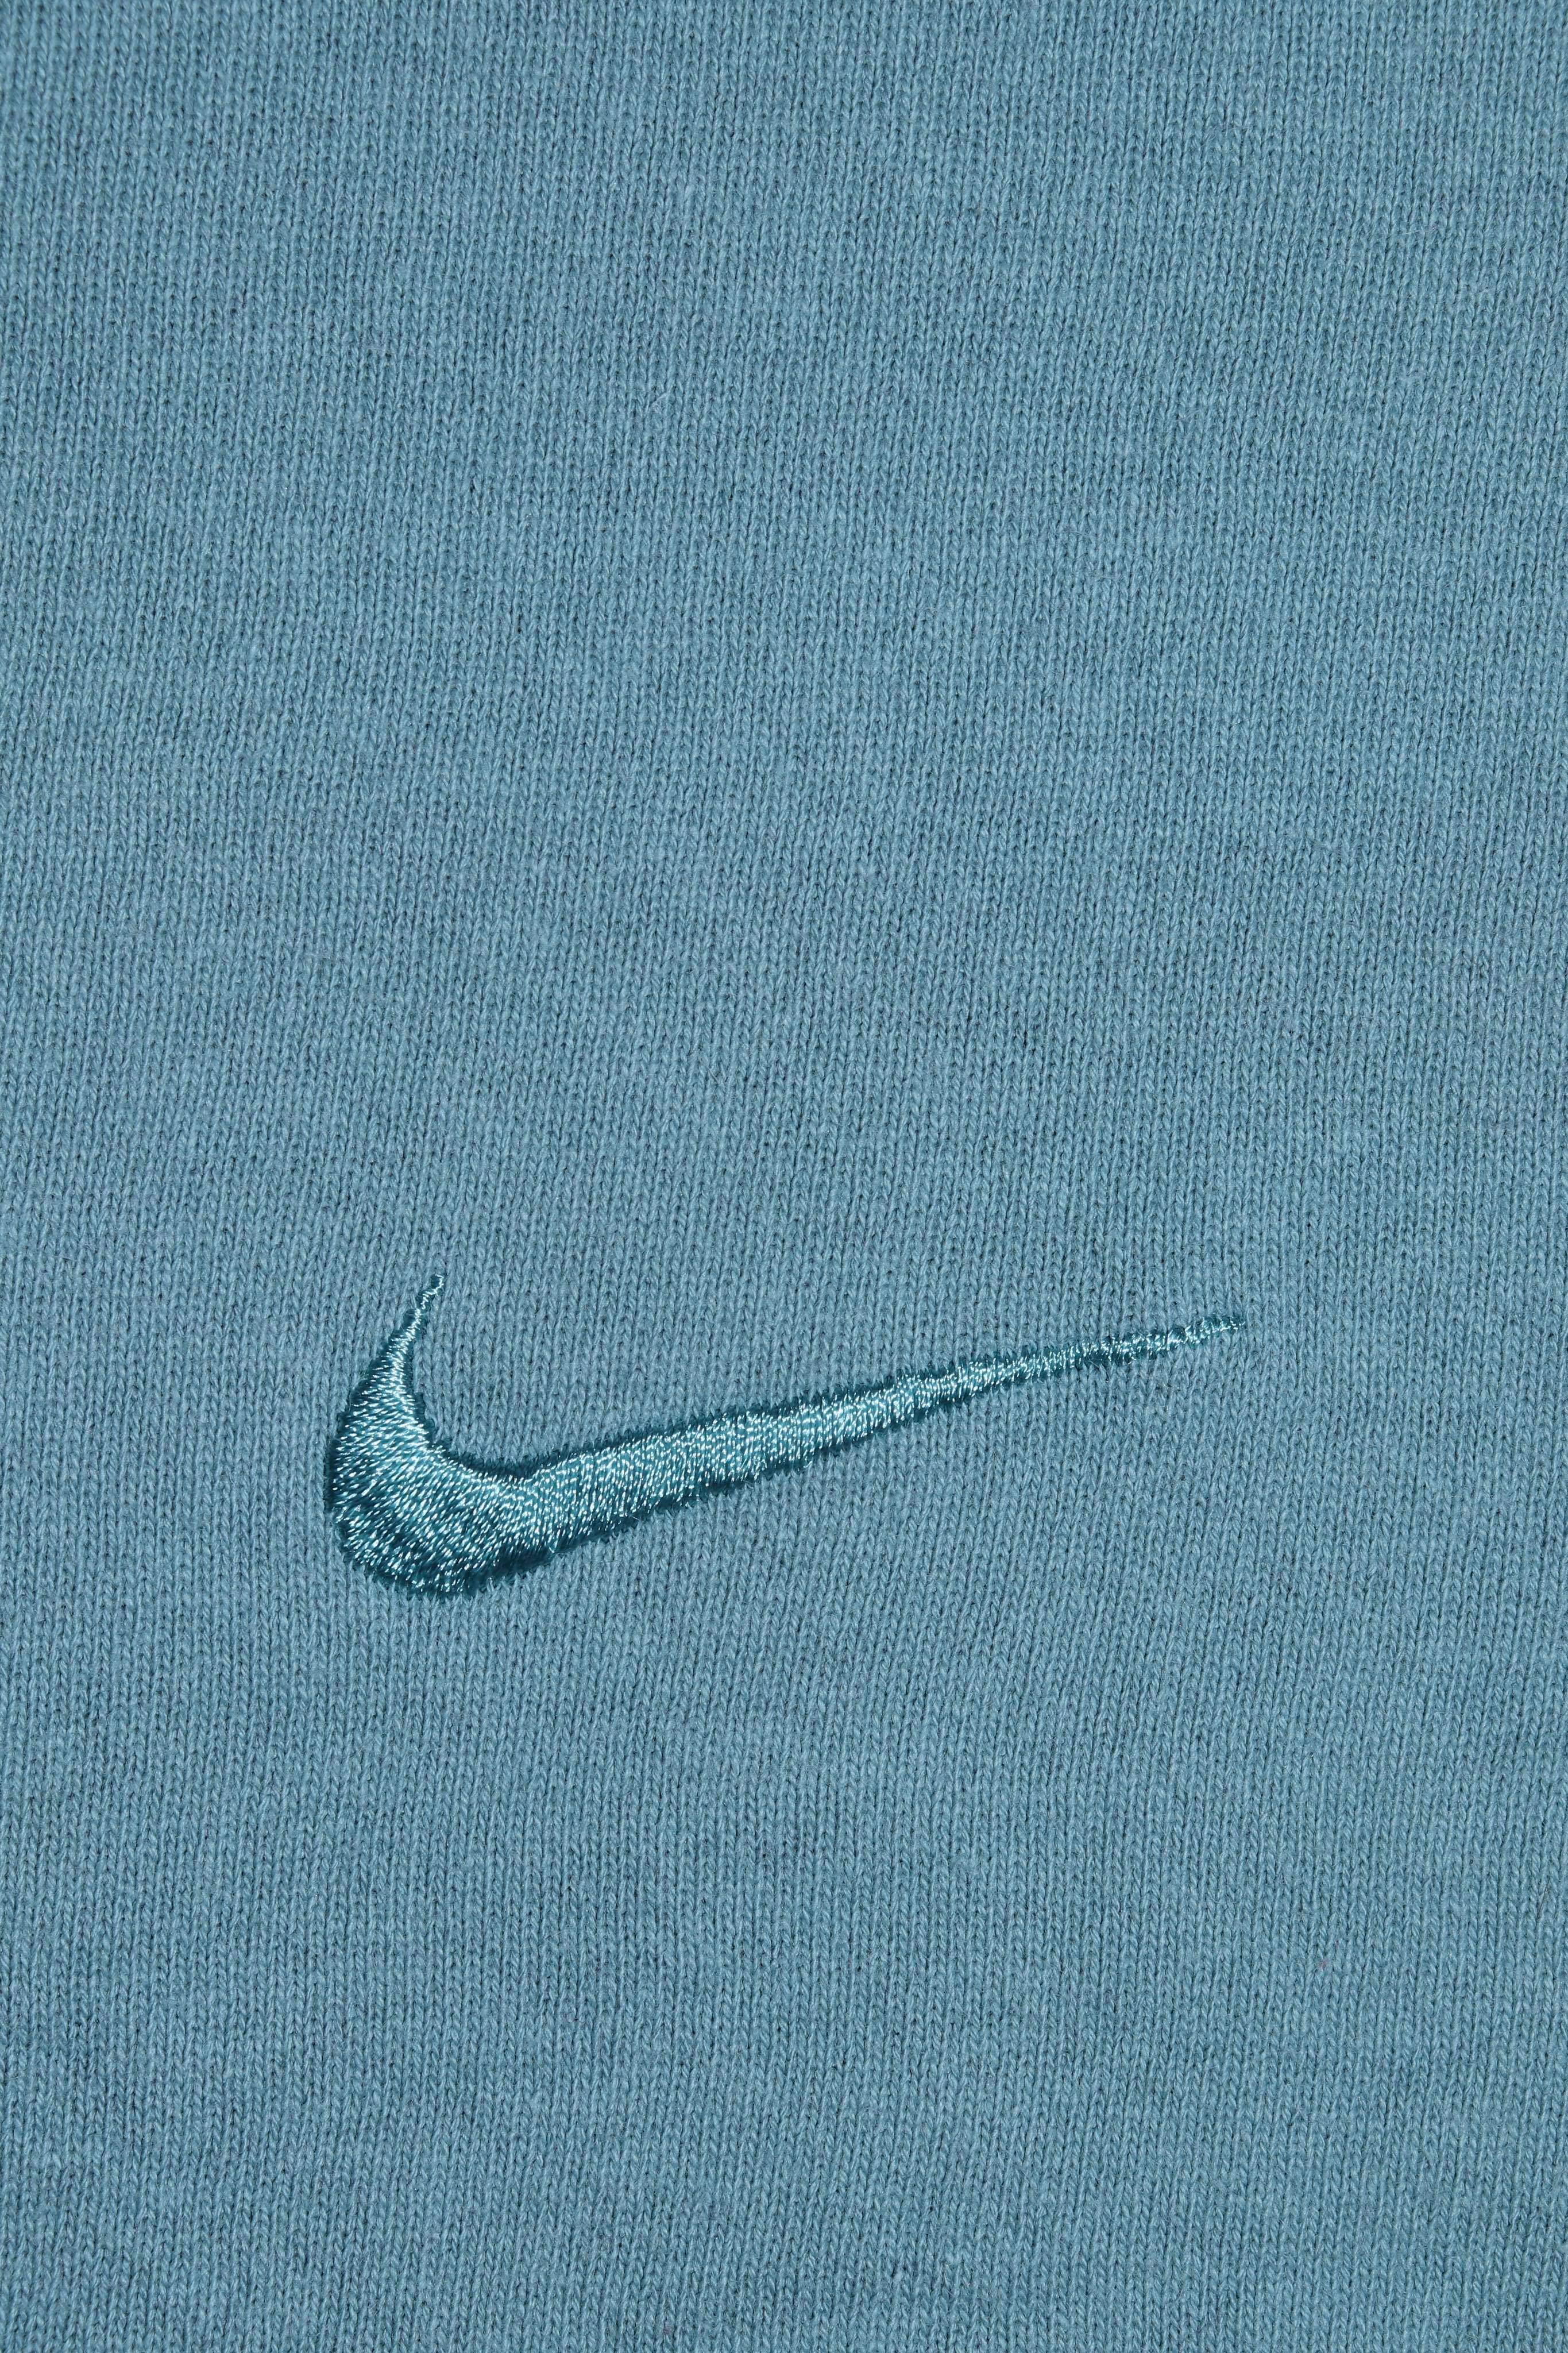 Vintage 90s Nike Embroidered Mini Swoosh Ice Blue Sweatshirt